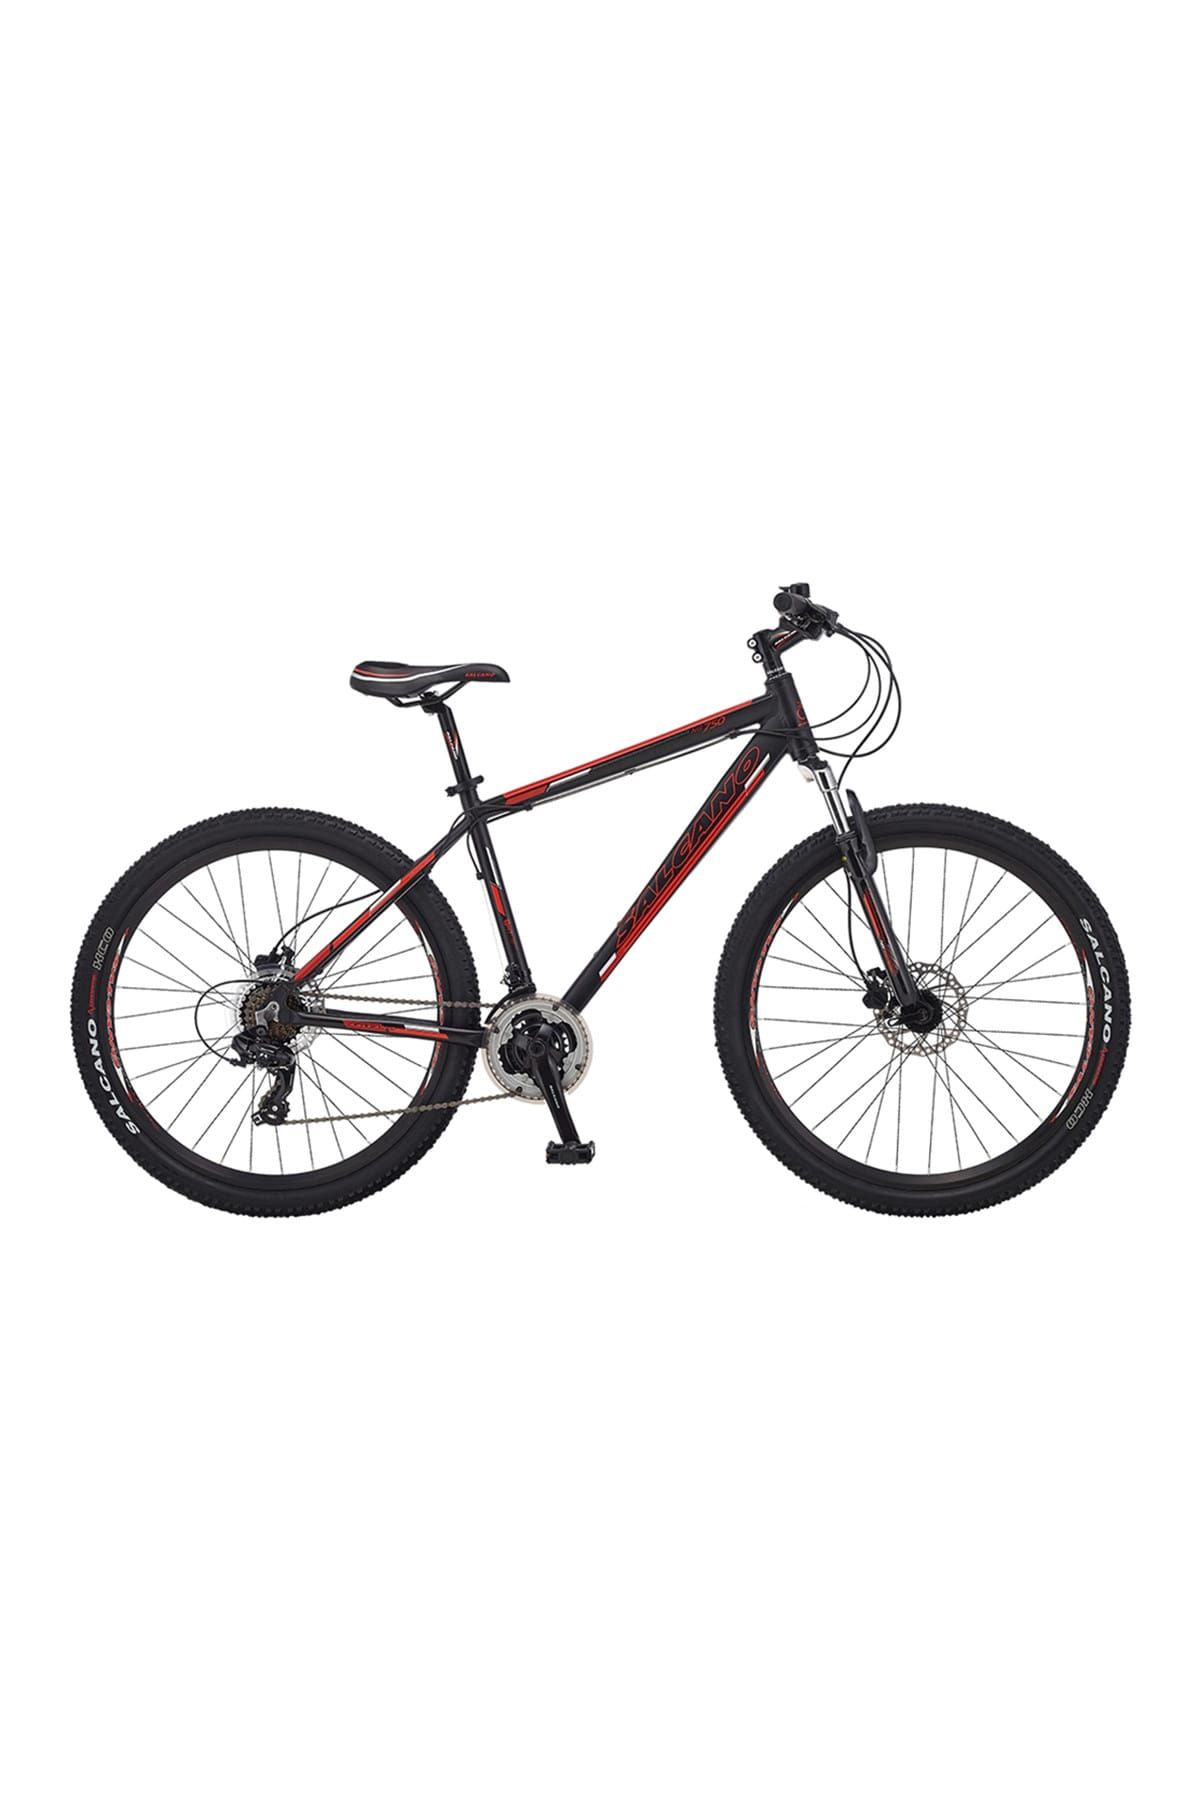 Salcano NG 750 HD 27.5 Jant Bisiklet 133 Mat Siyah-Kırmızı-Beyaz